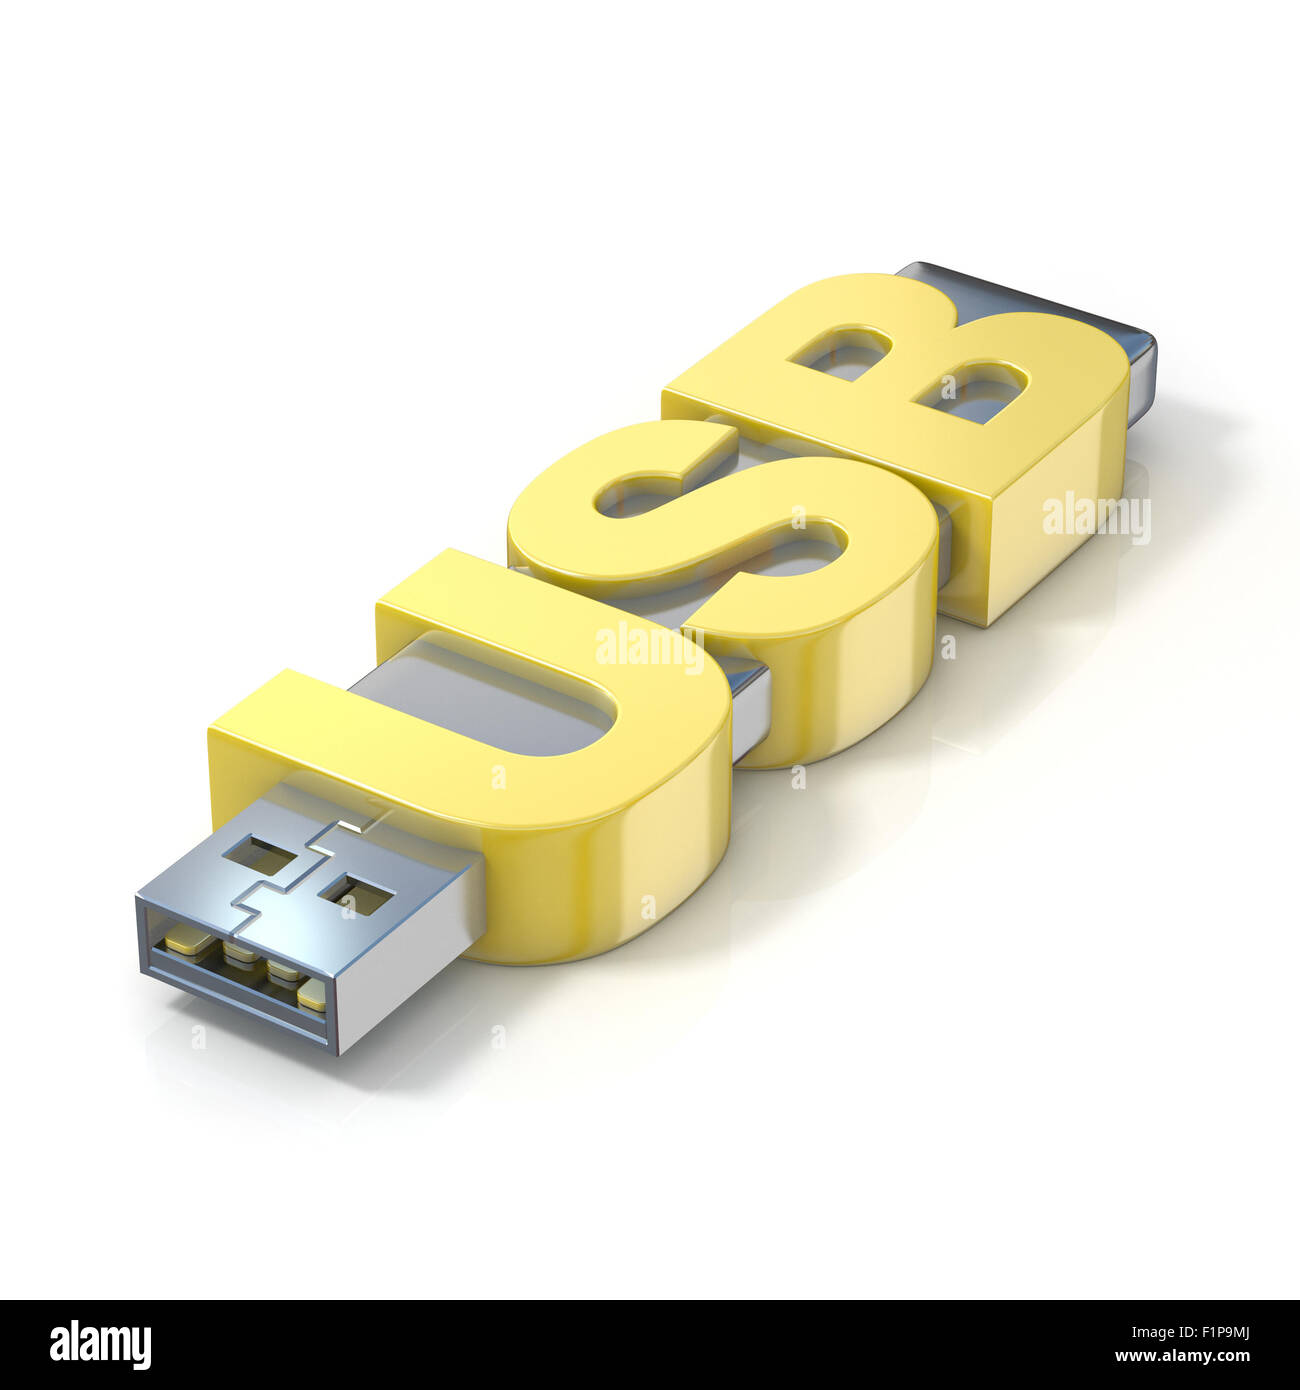 USB-Flash-Speicher, mit dem Wort USB gemacht. 3D-Render Abbildung isoliert auf weißem Hintergrund Stockfoto